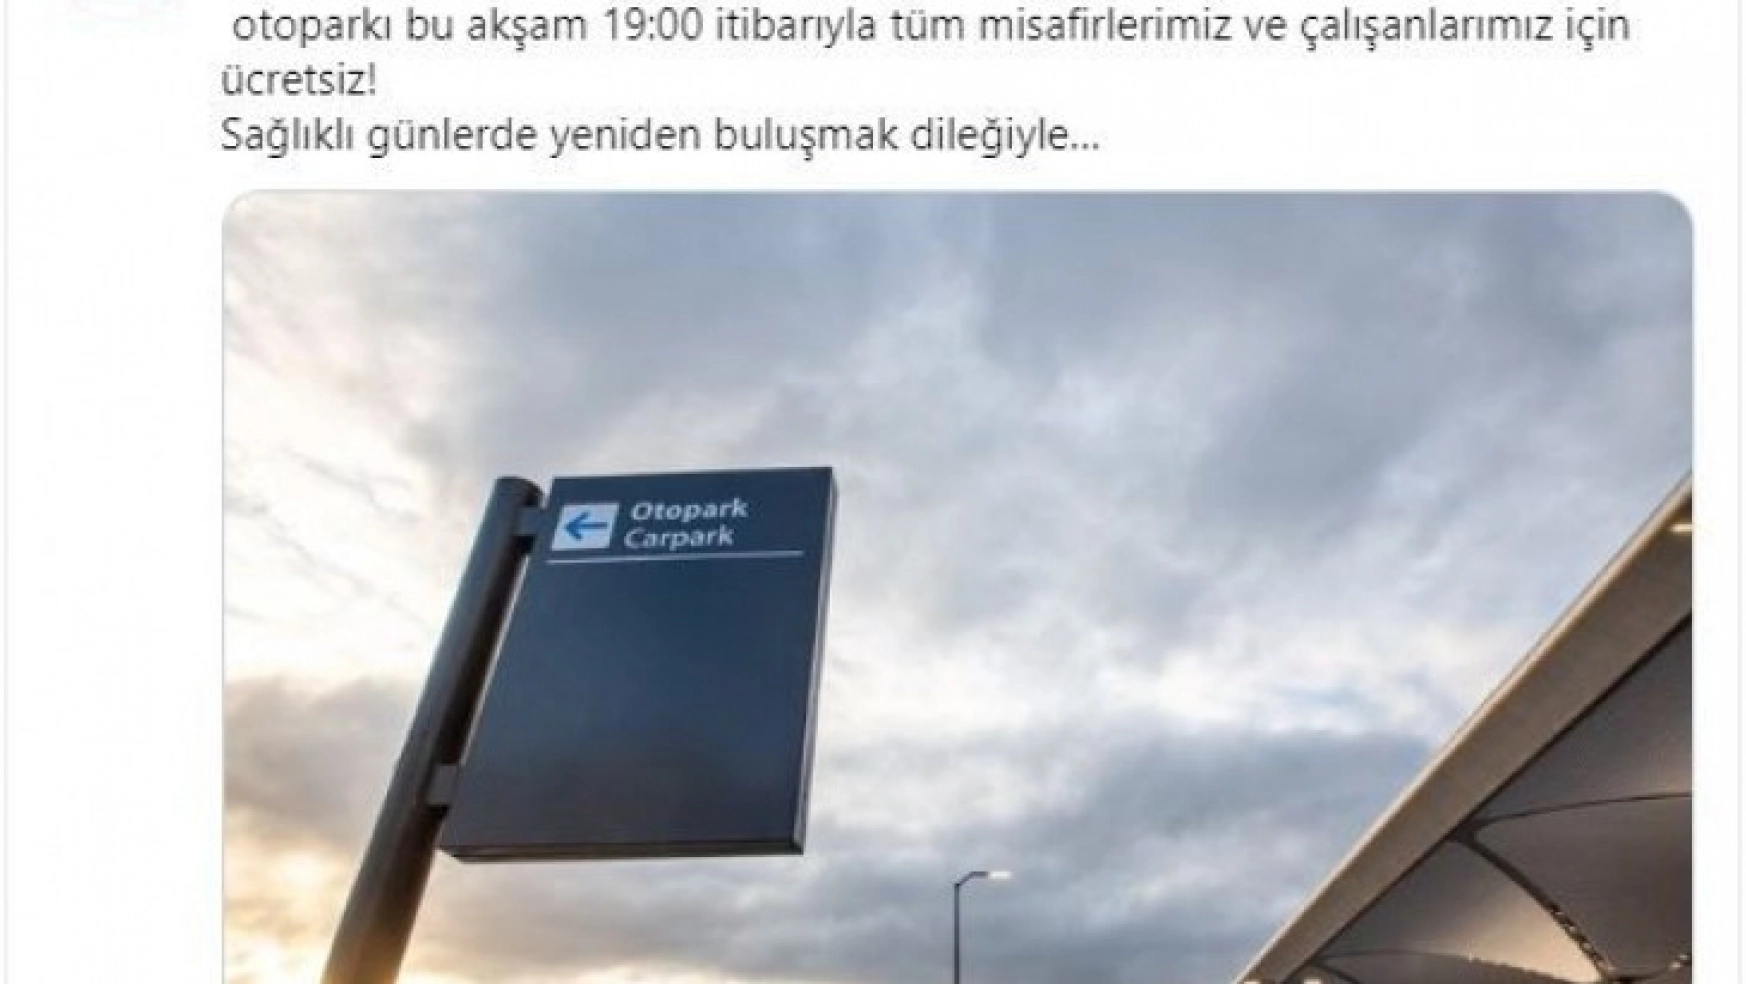 İstanbul Havalimanı otopark ikinci bir duyuruya kadar ücretsiz oldu